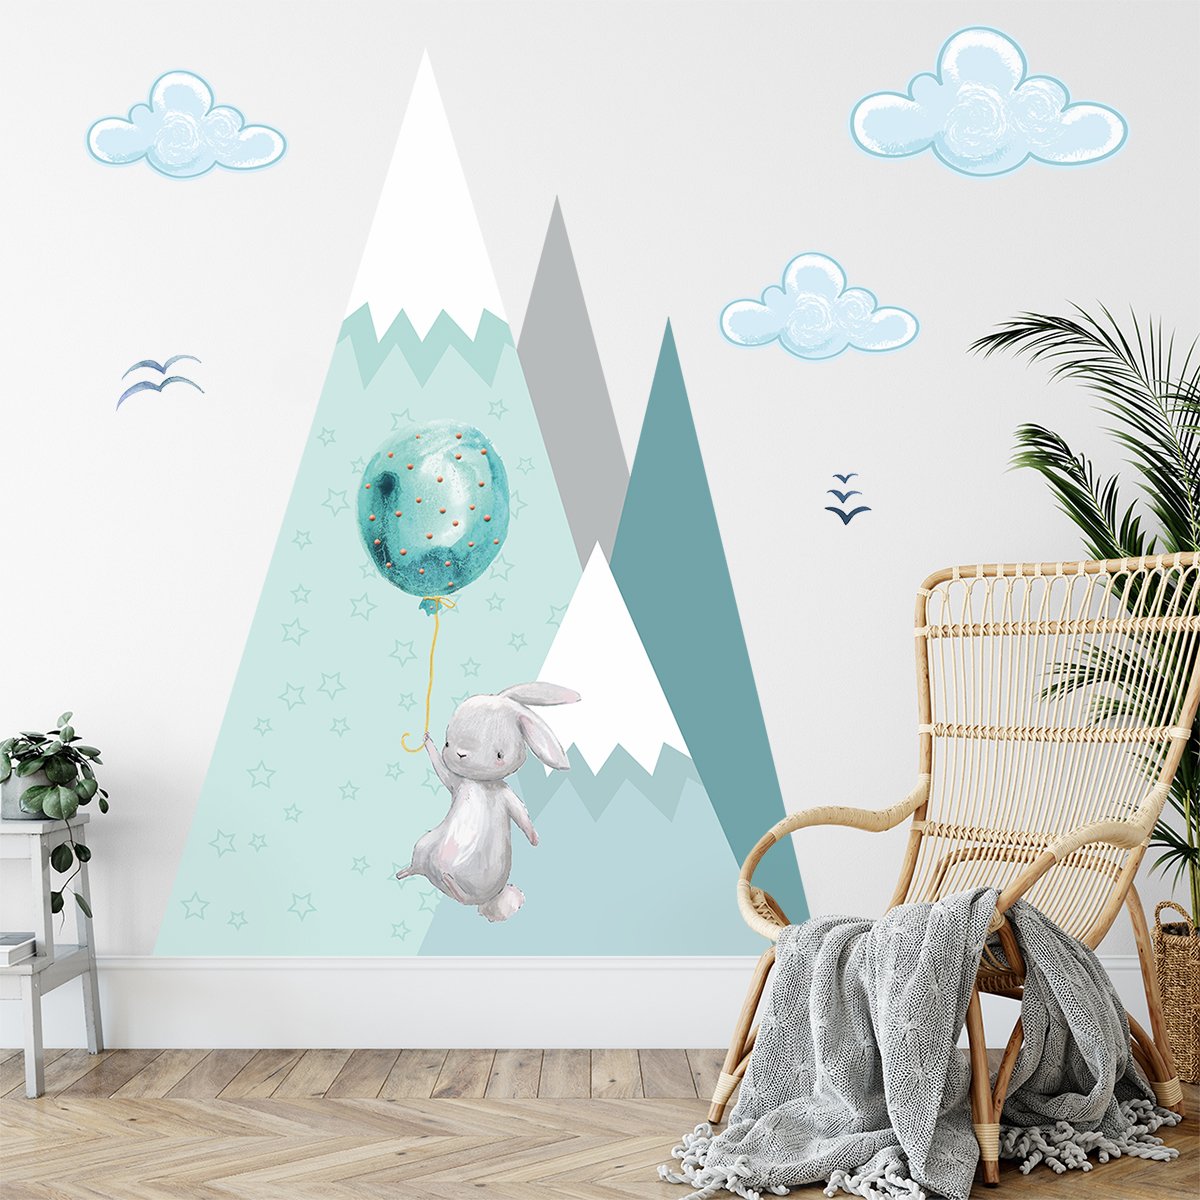 Naklejki na ścianę dla dzieci balony i miętowe góry#kolor_mietowy